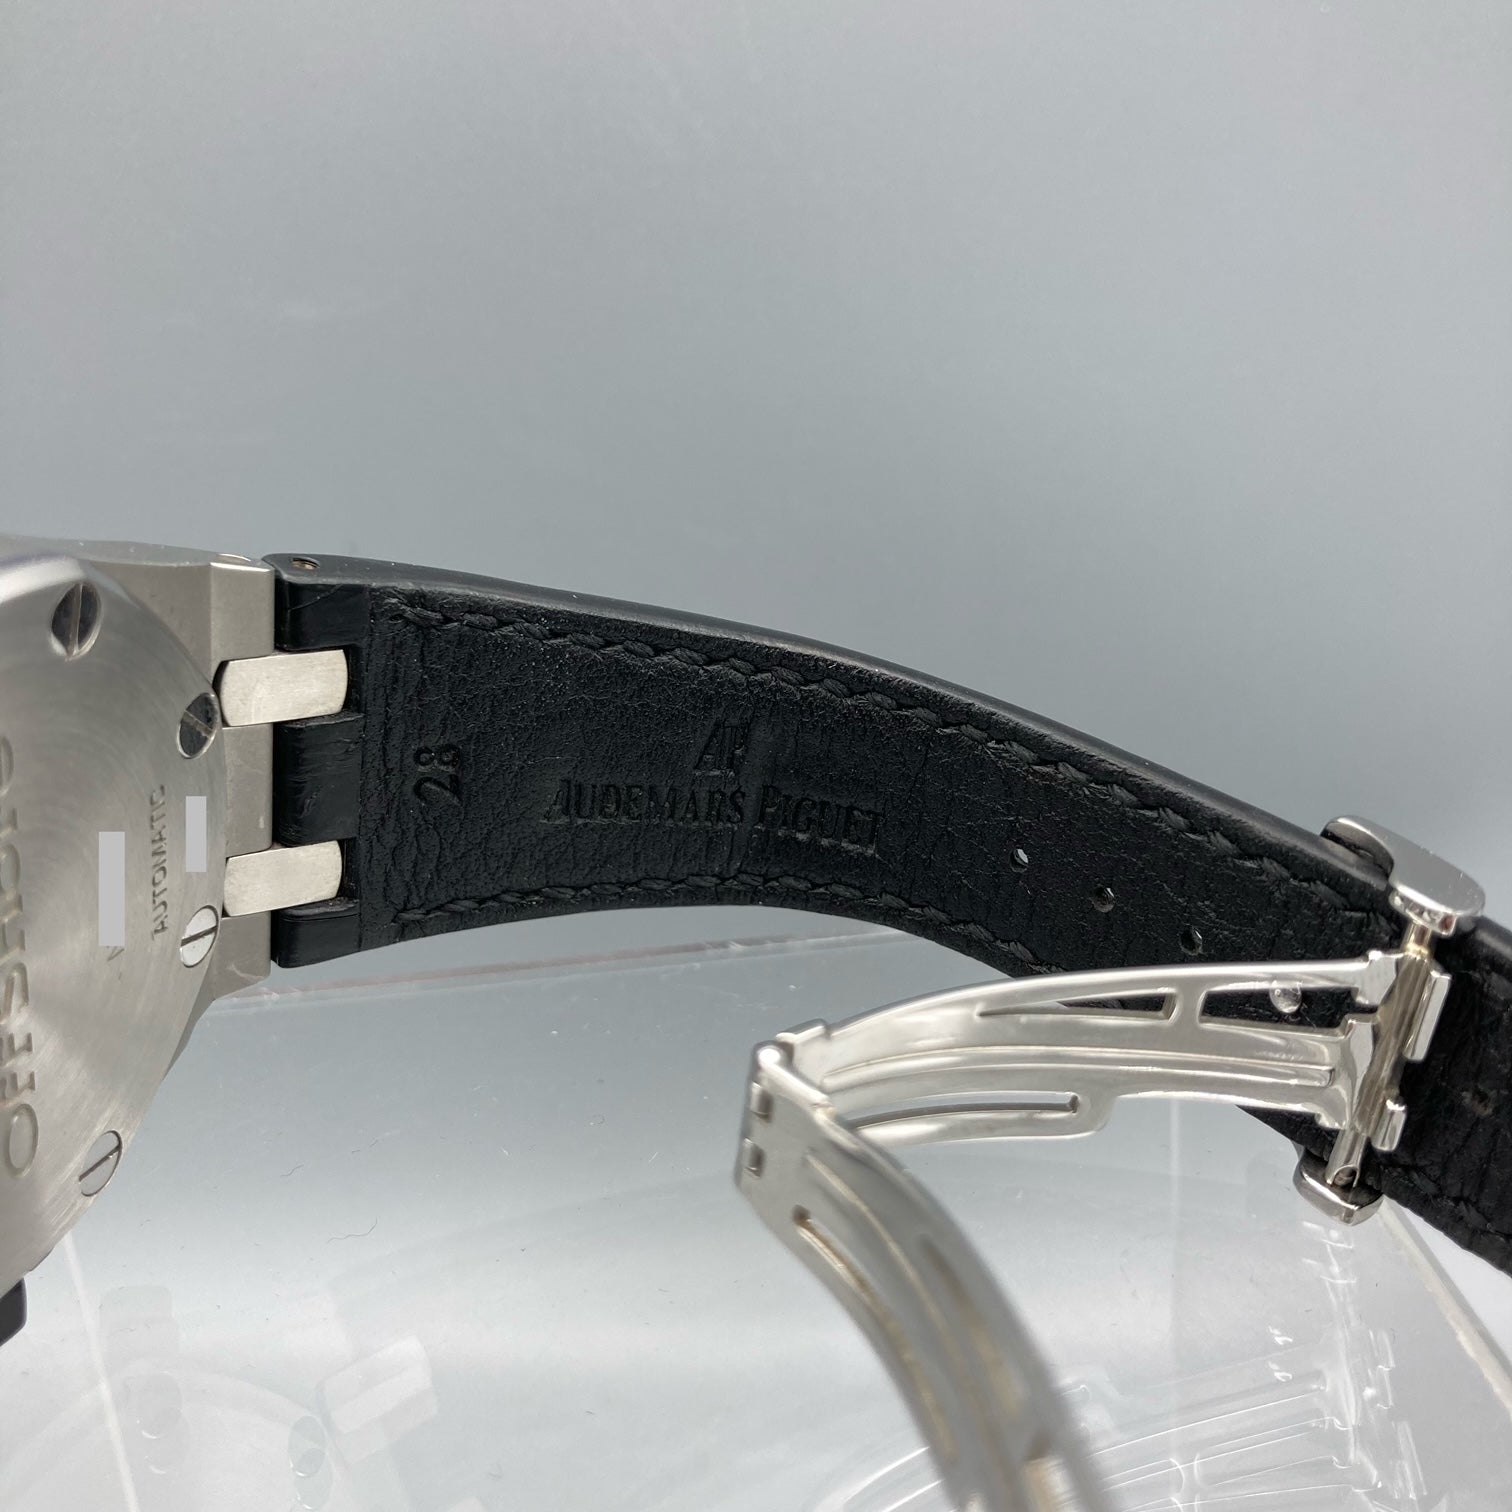 Audemars Piguet Royal Oak Men's Black Watch with Leather Strap - 26020ST.OO.D001